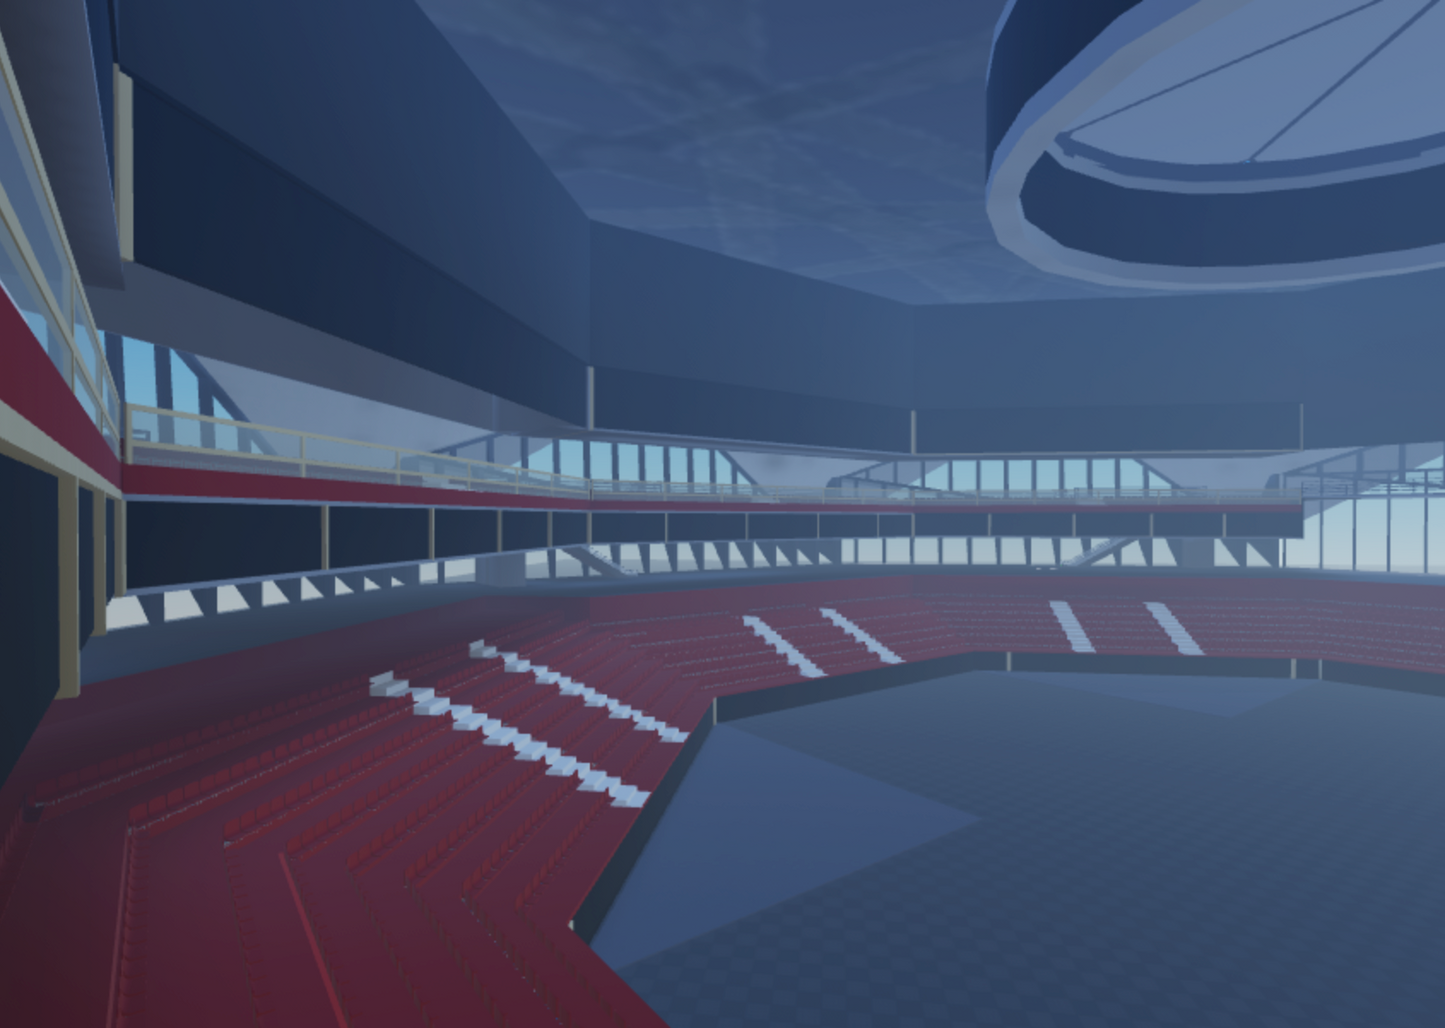 Mercede's Benz Stadium - Venue